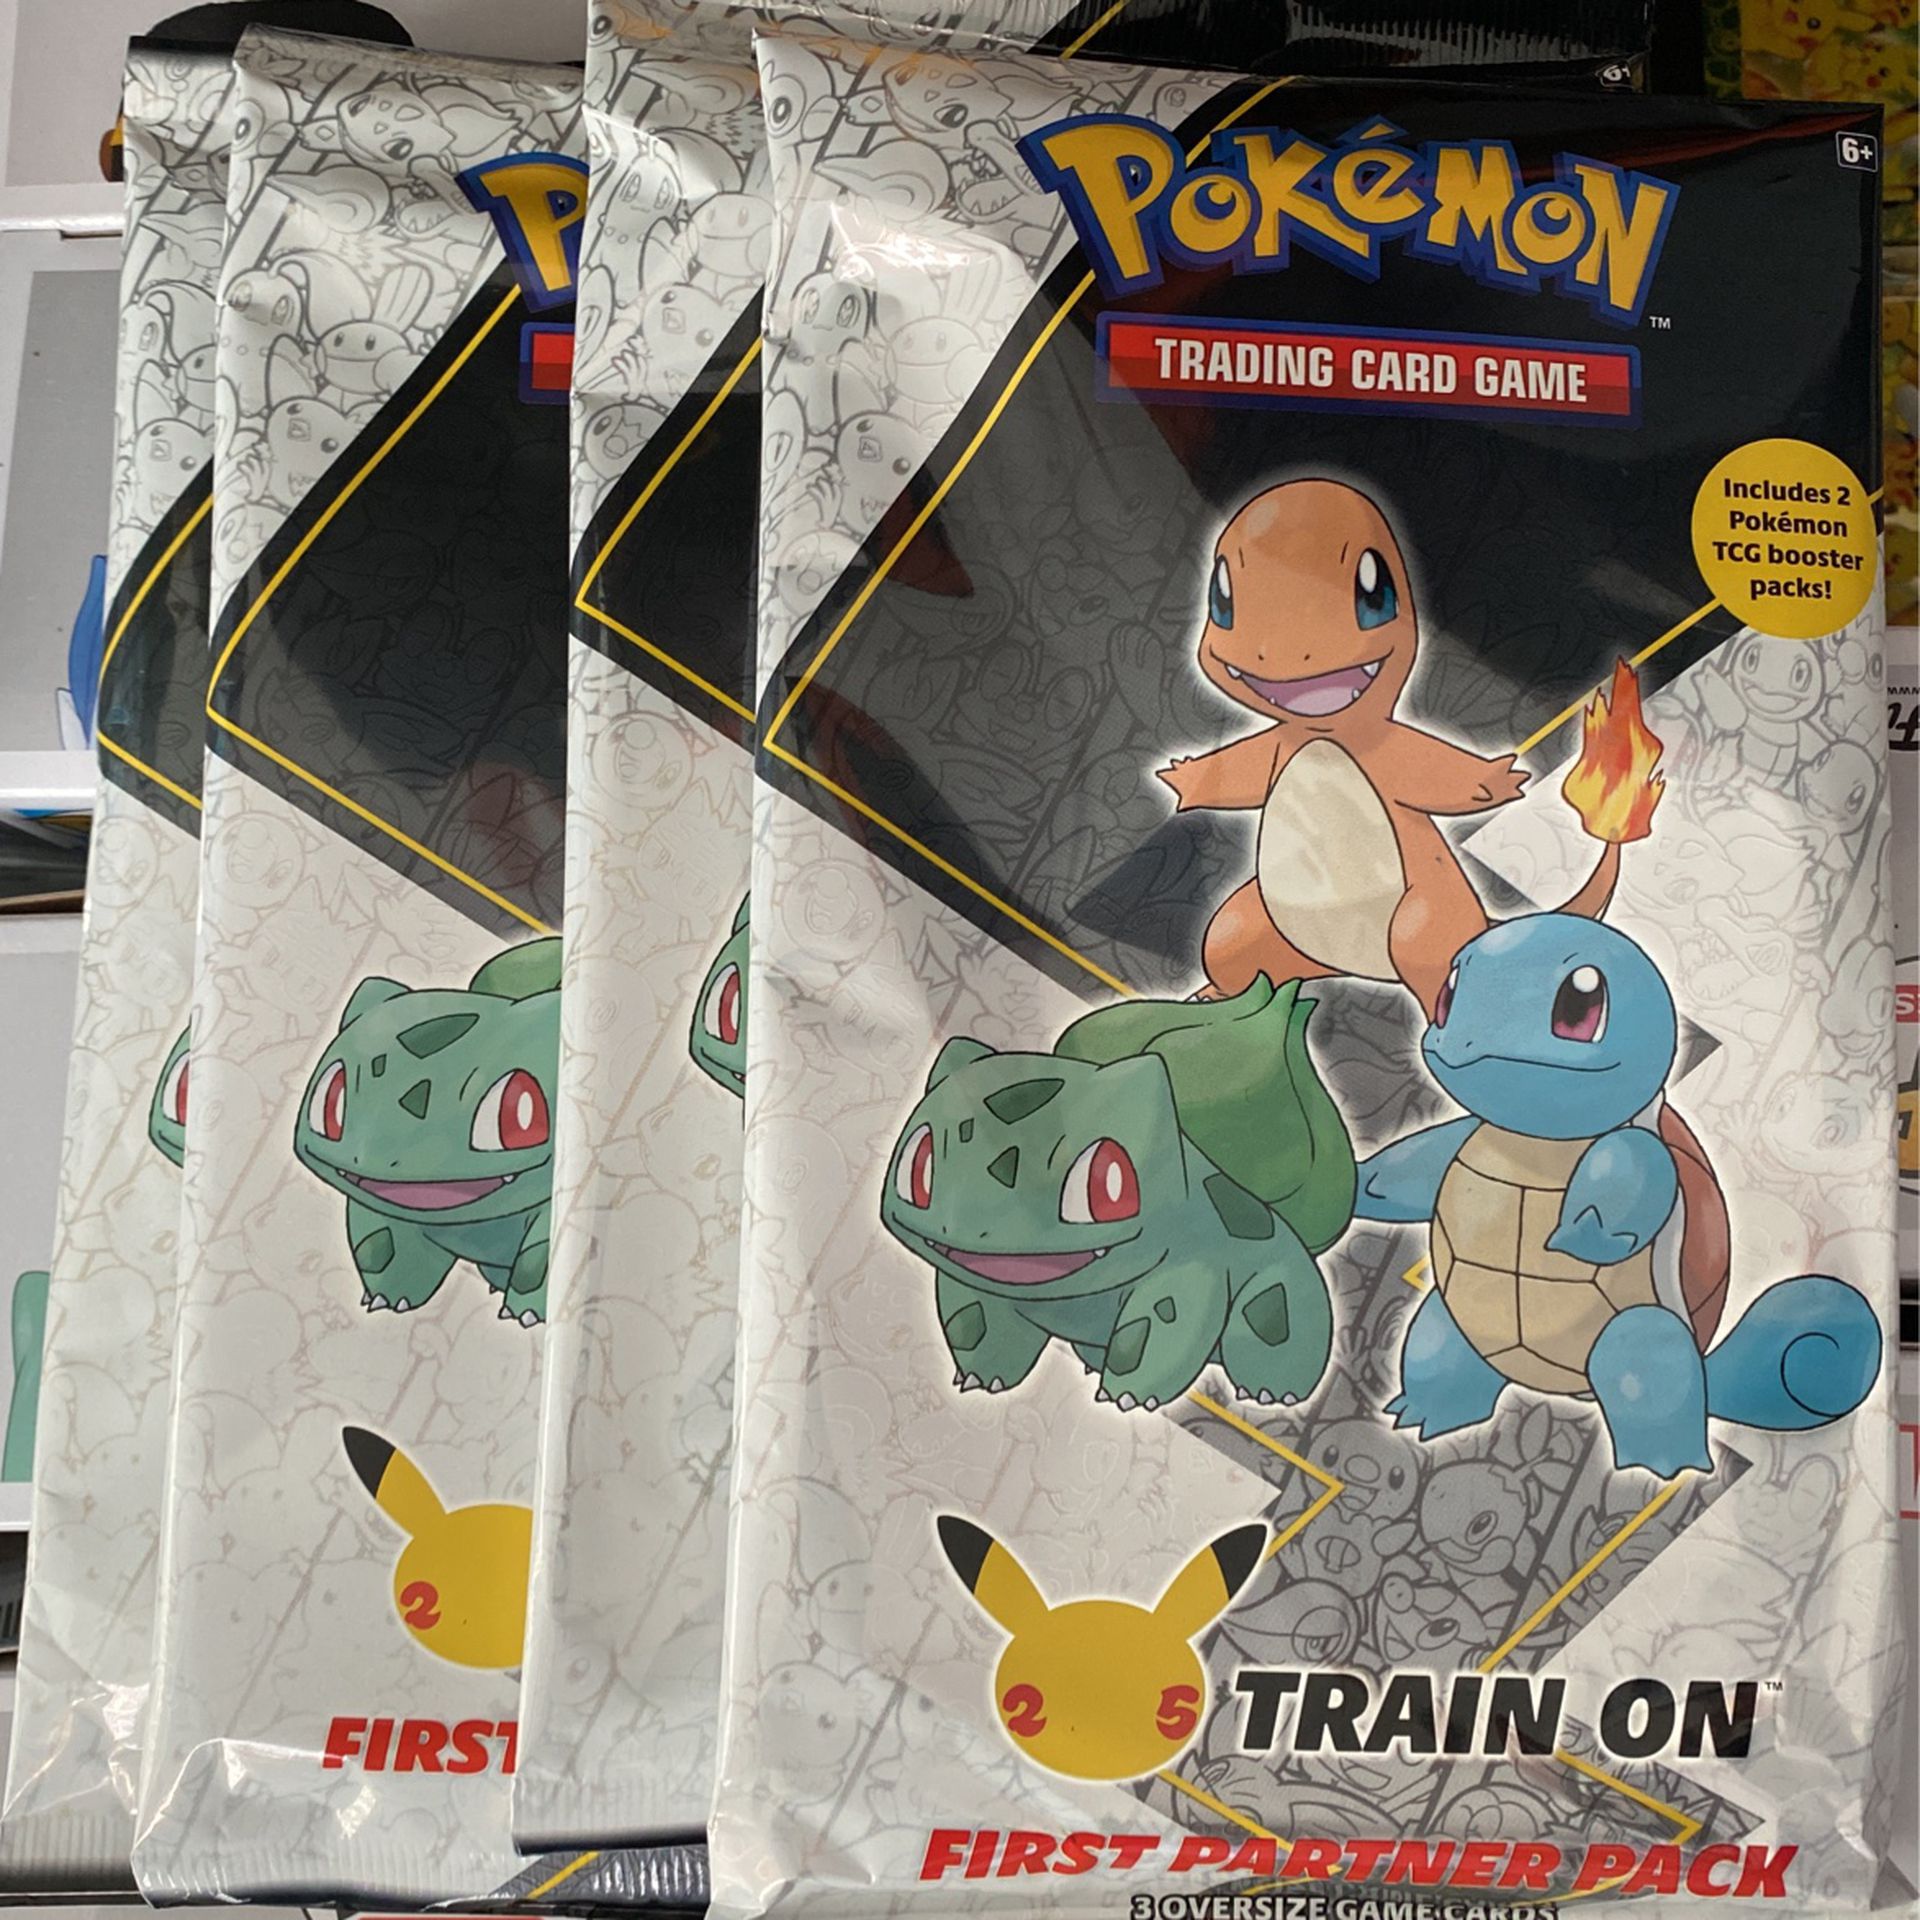 Pokémon First Partner Pack Kanto (3 Oversized Cards) New Sealed, Final Set